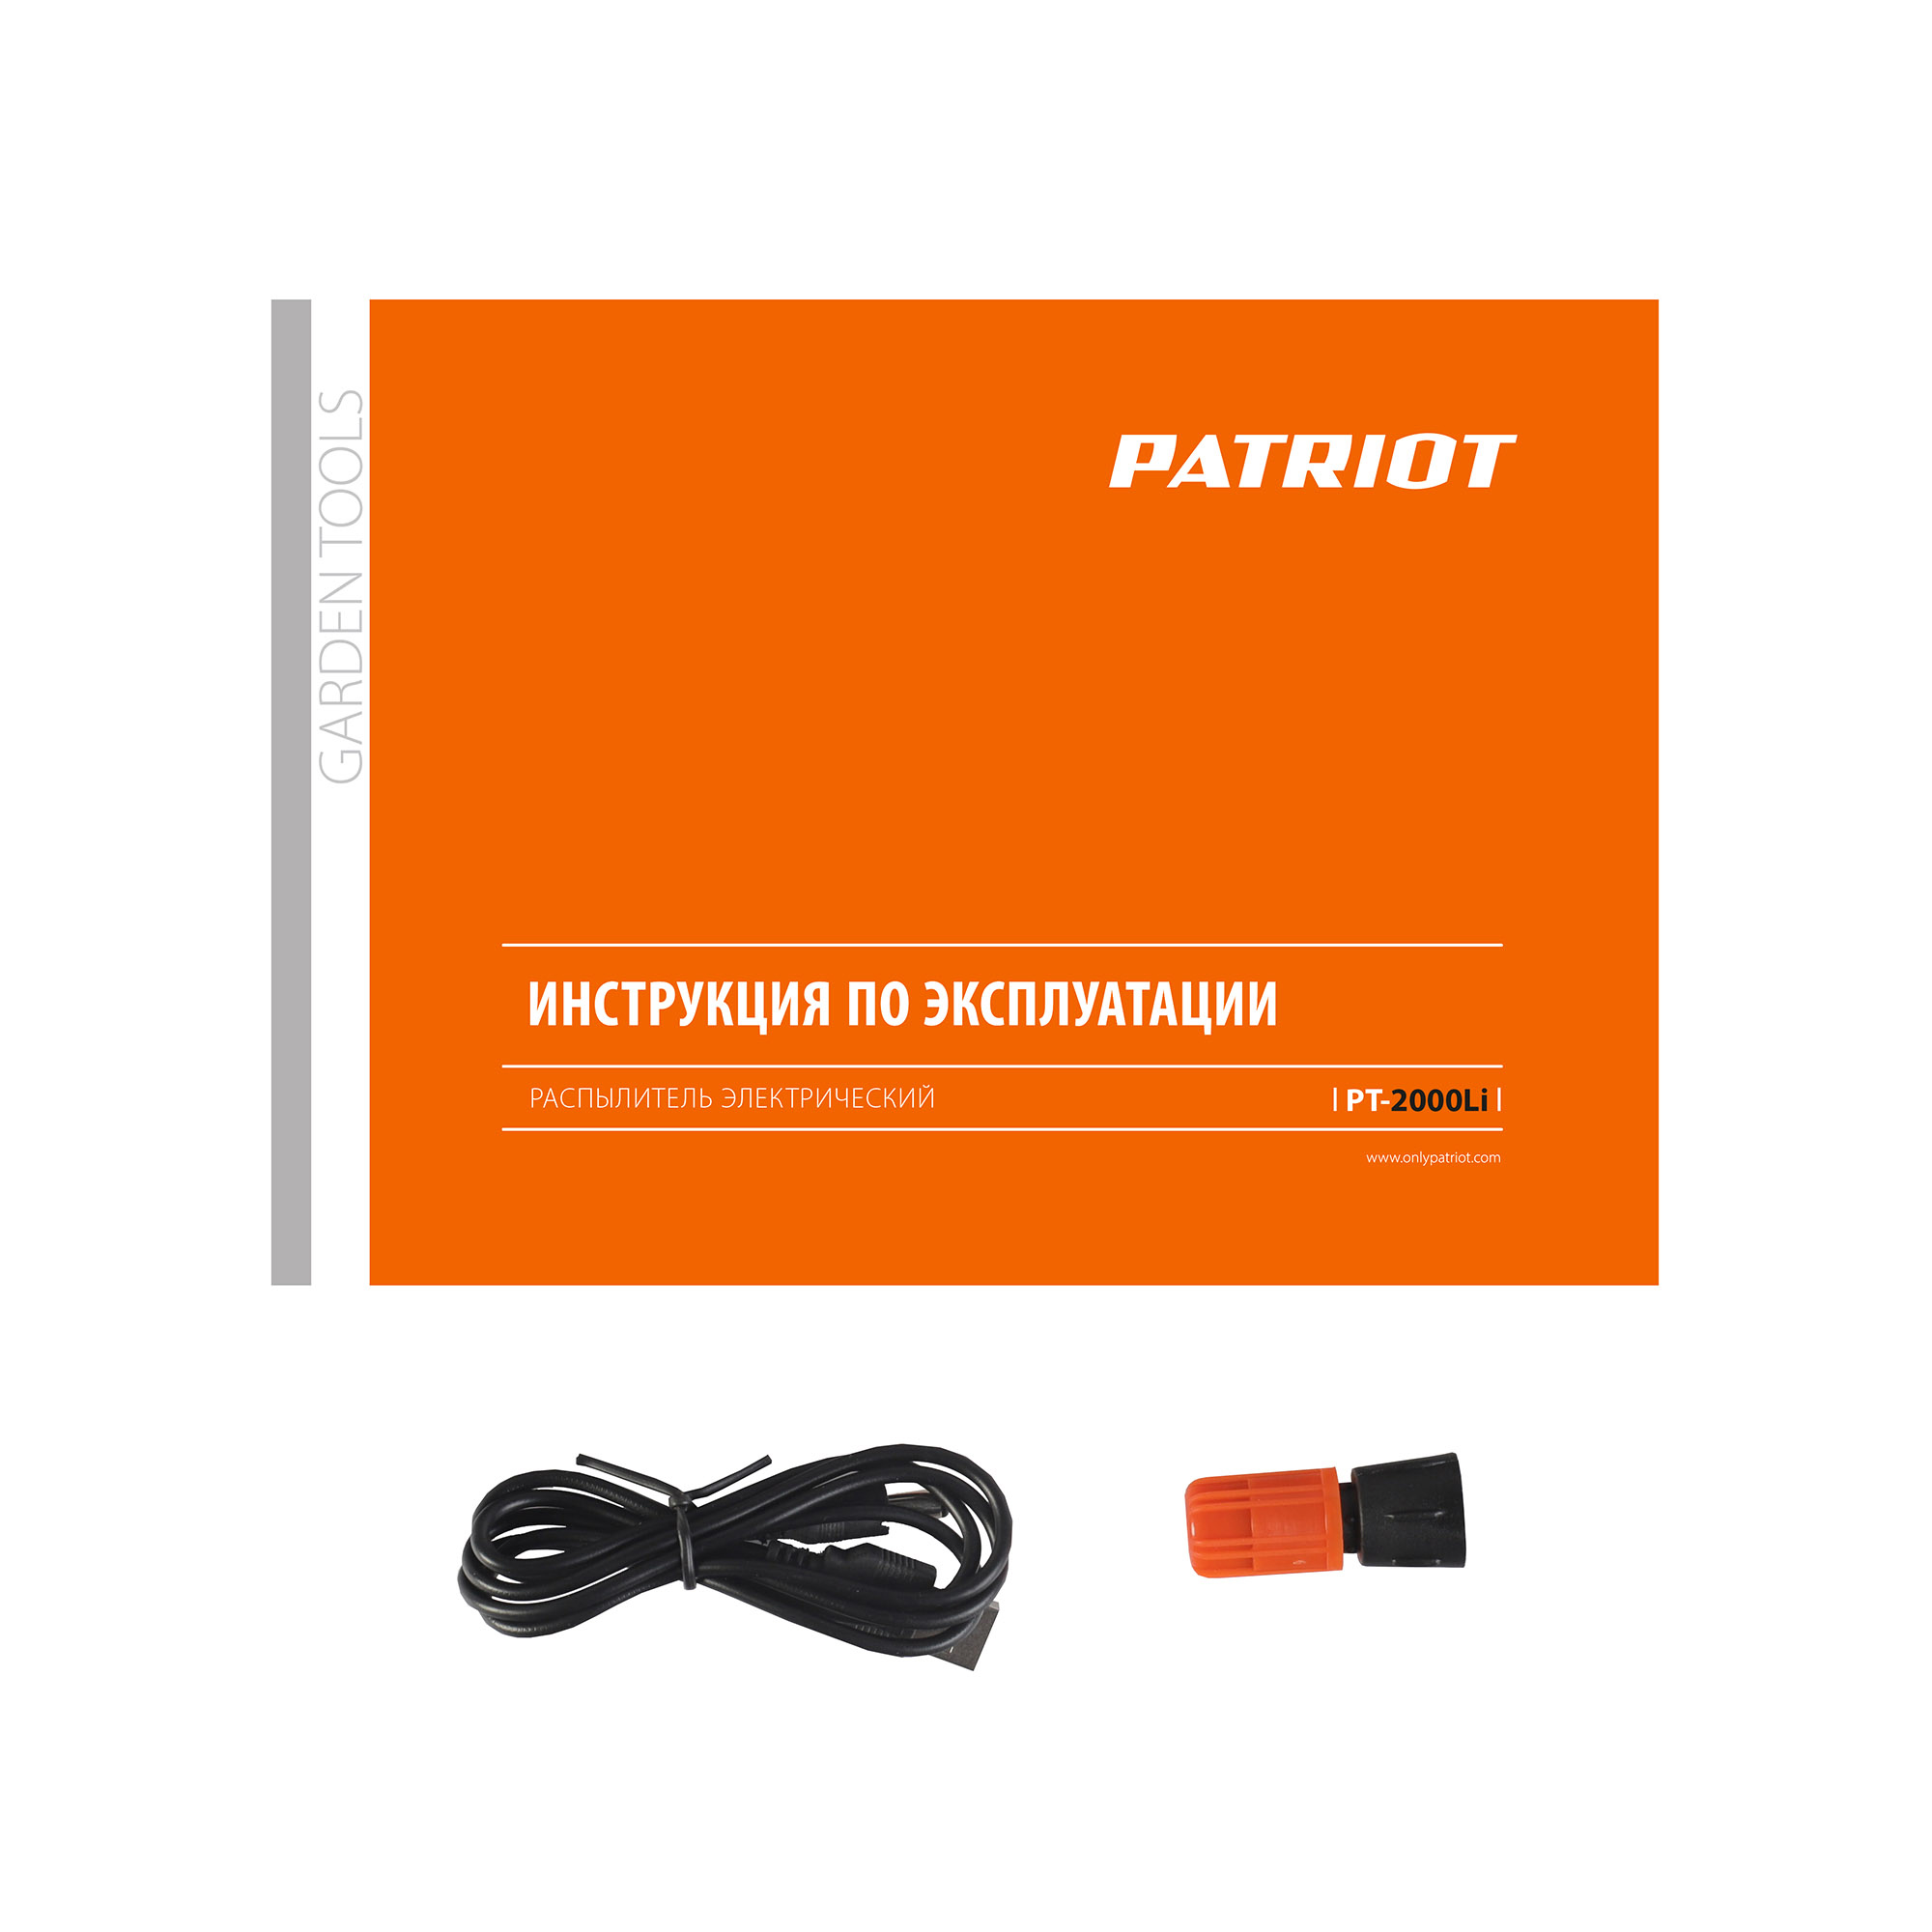 Опрыскиватель аккумуляторный PATRIOT PT-2000 Li